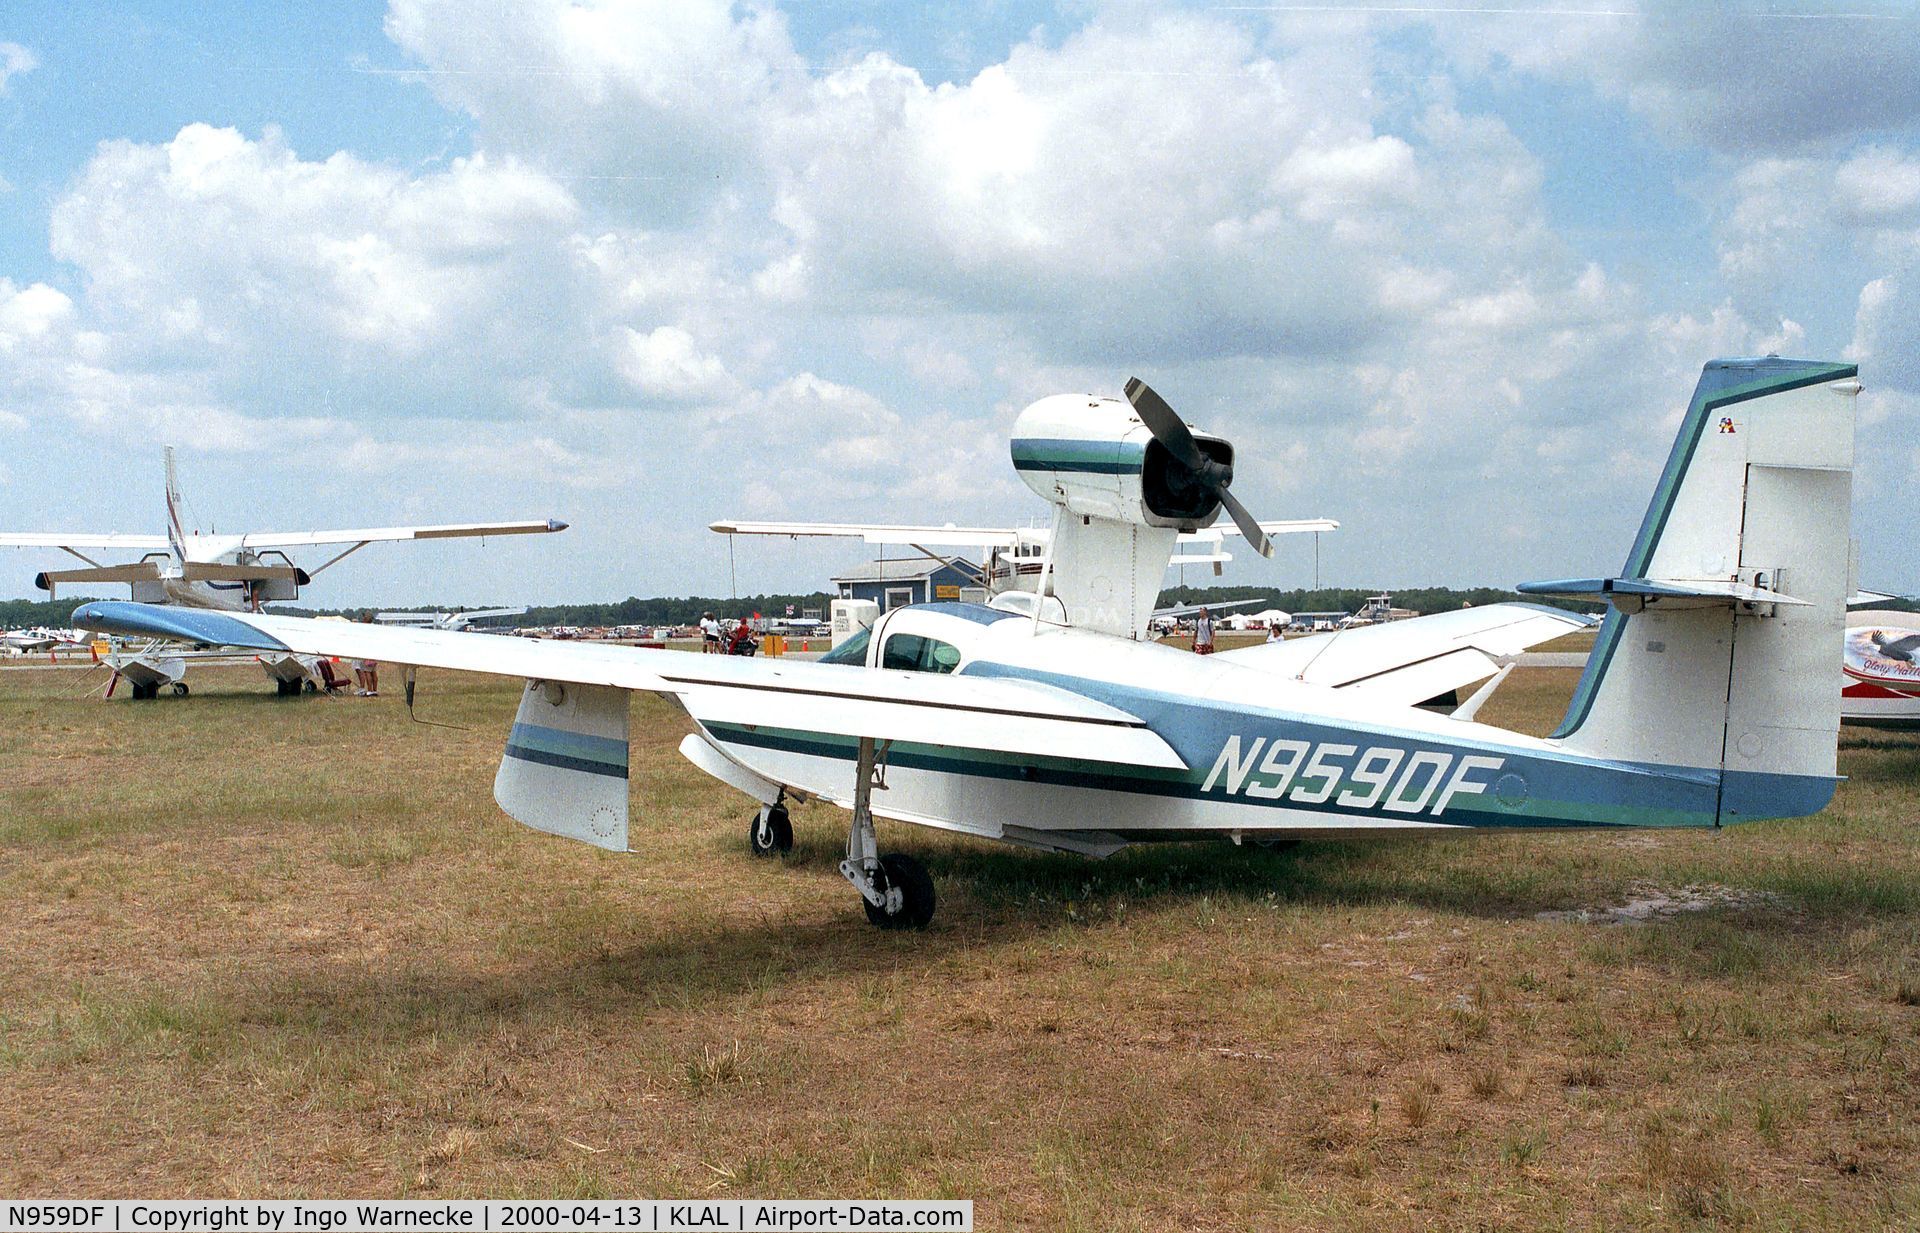 N959DF, 1980 Consolidated Aeronautics Inc. LAKE LA-4-200 C/N 1040, Lake LA-4-200 Buccaneer at Sun 'n Fun 2000, Lakeland FL